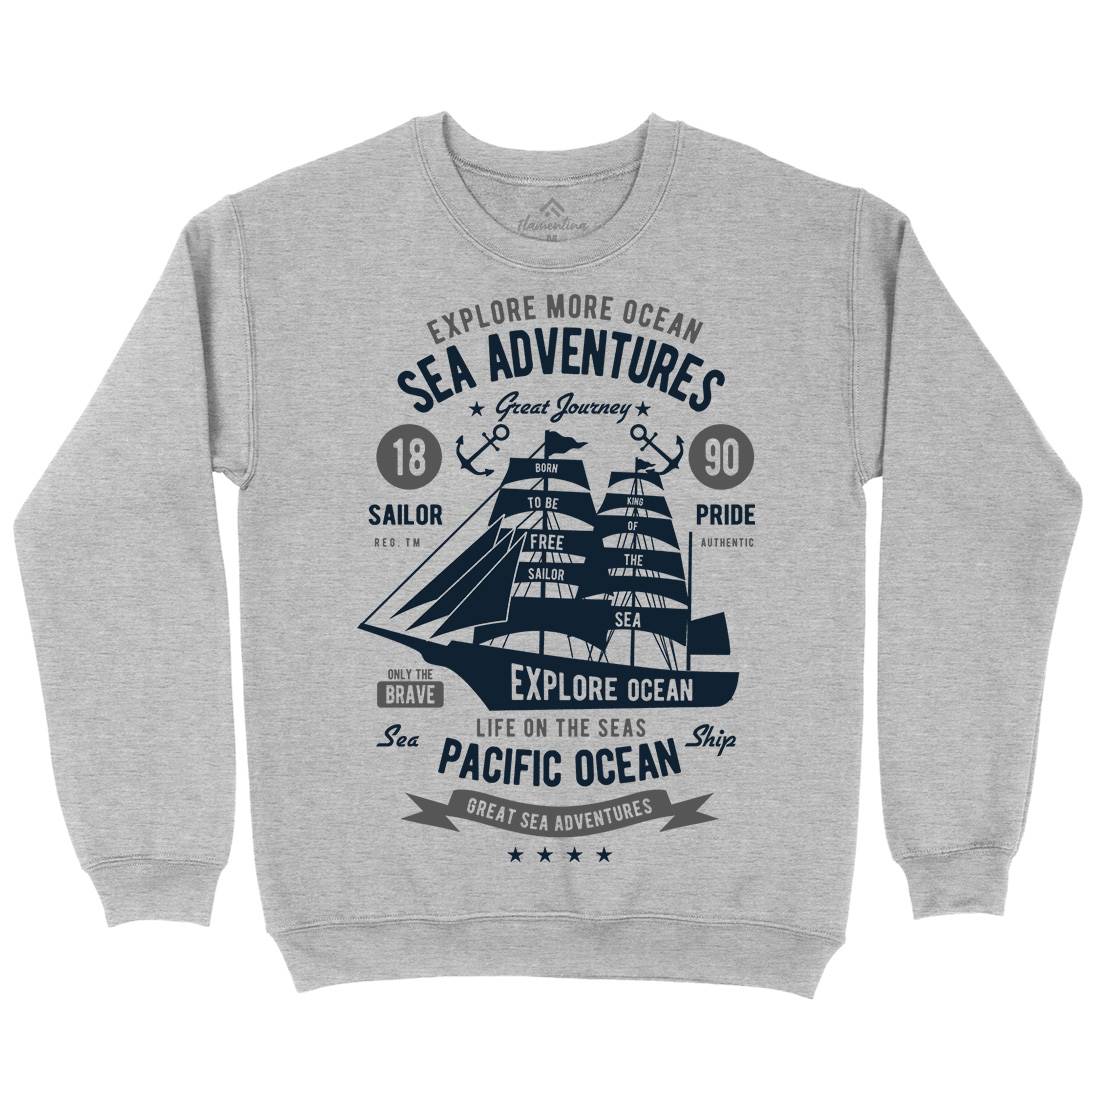 Sea Adventures Kids Crew Neck Sweatshirt Navy B446